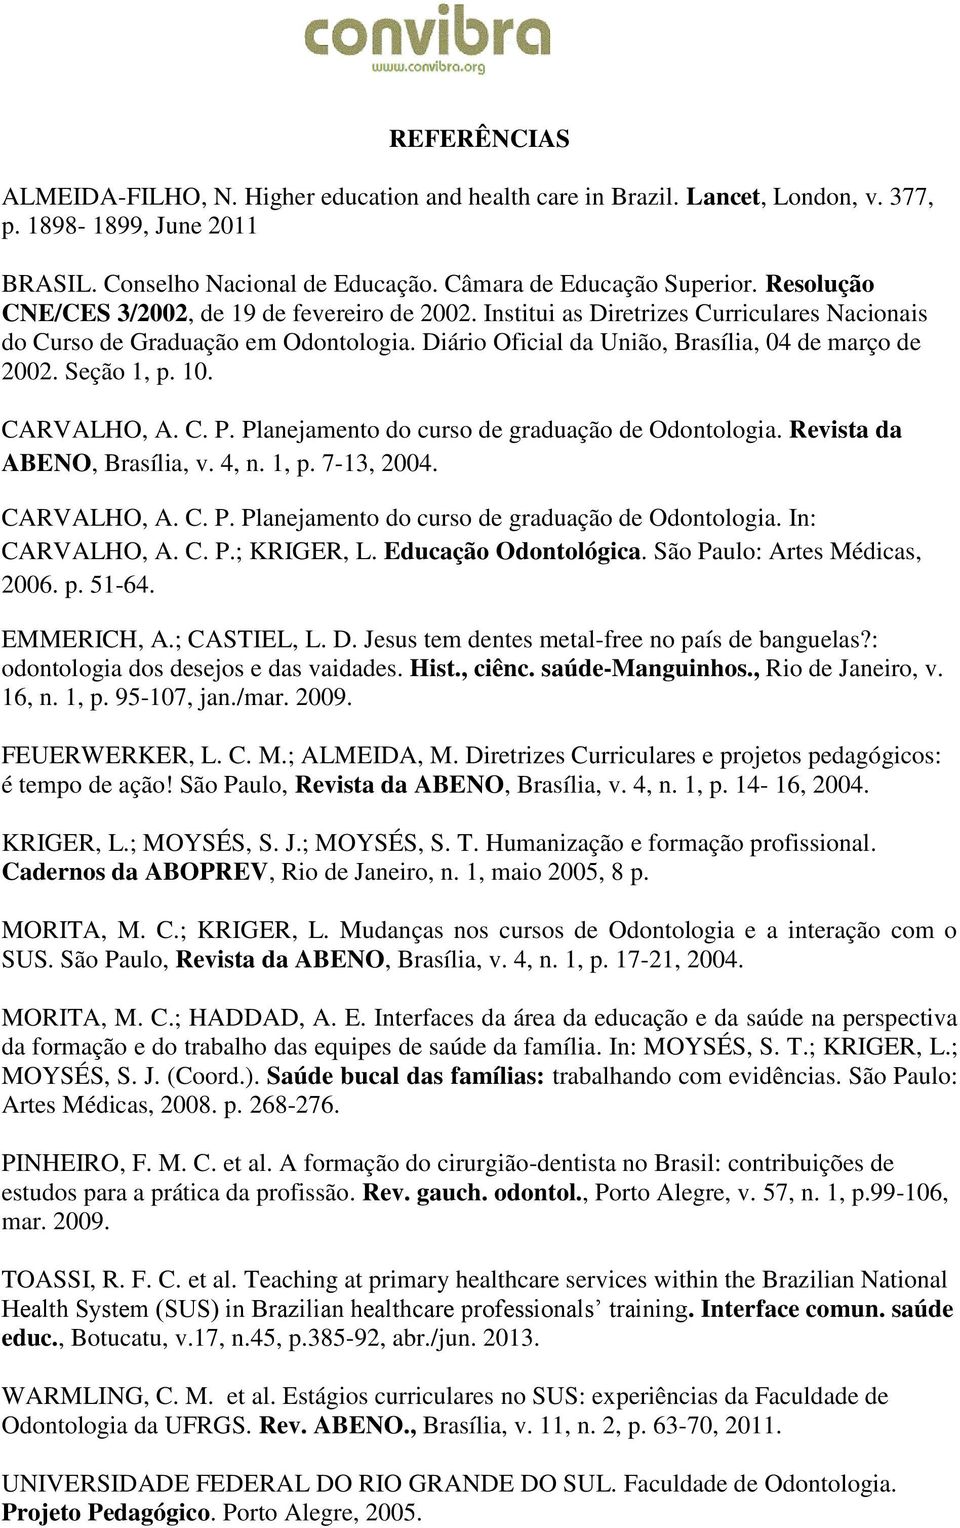 Seção 1, p. 10. CARVALHO, A. C. P. Planejamento do curso de graduação de Odontologia. Revista da ABENO, Brasília, v. 4, n. 1, p. 7-13, 2004. CARVALHO, A. C. P. Planejamento do curso de graduação de Odontologia. In: CARVALHO, A.